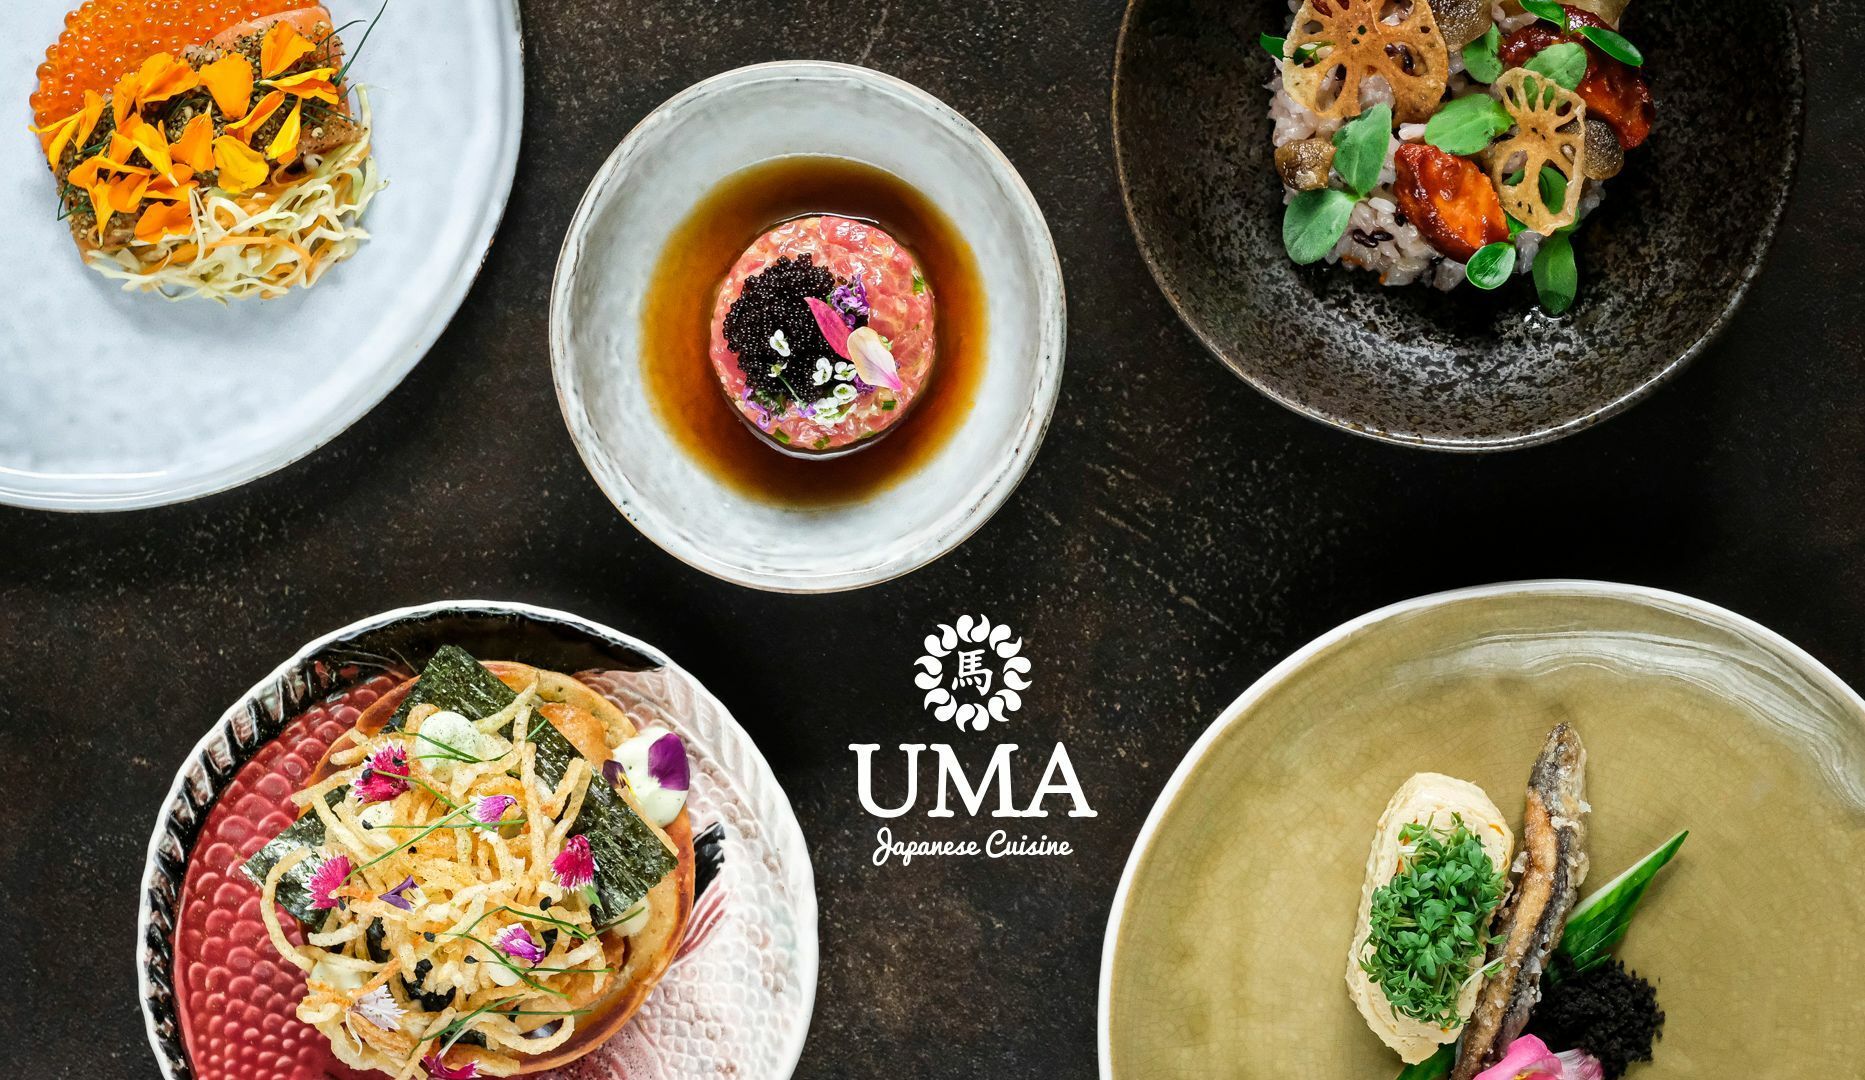 8 serveringer hos UMA